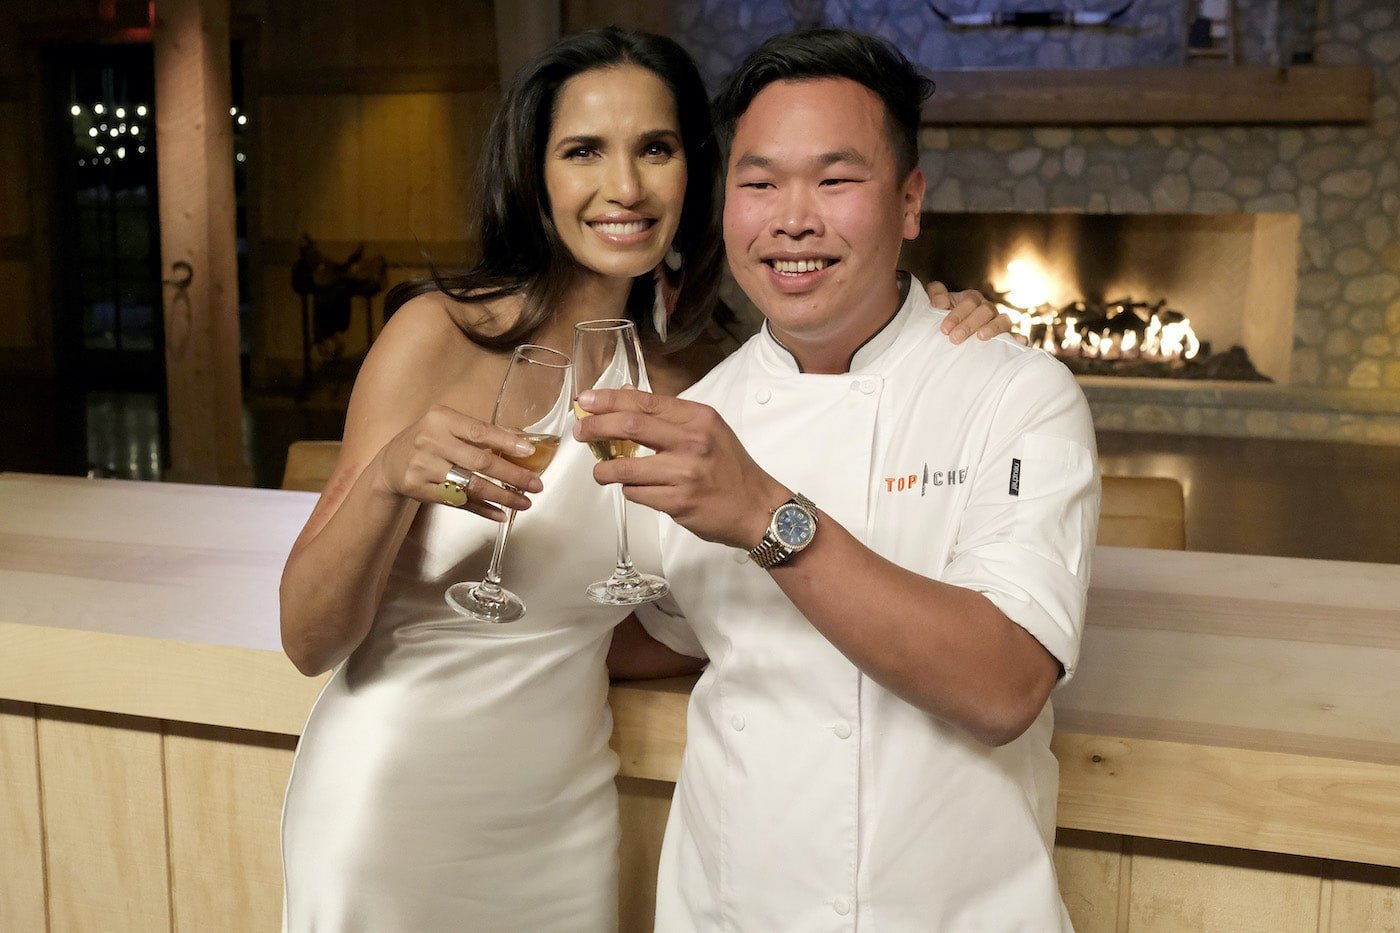 Buddha Lo es el último ganador de 'Top Chef' para Padma Lakshmi: 'Fue irreal' [Exclusivo]